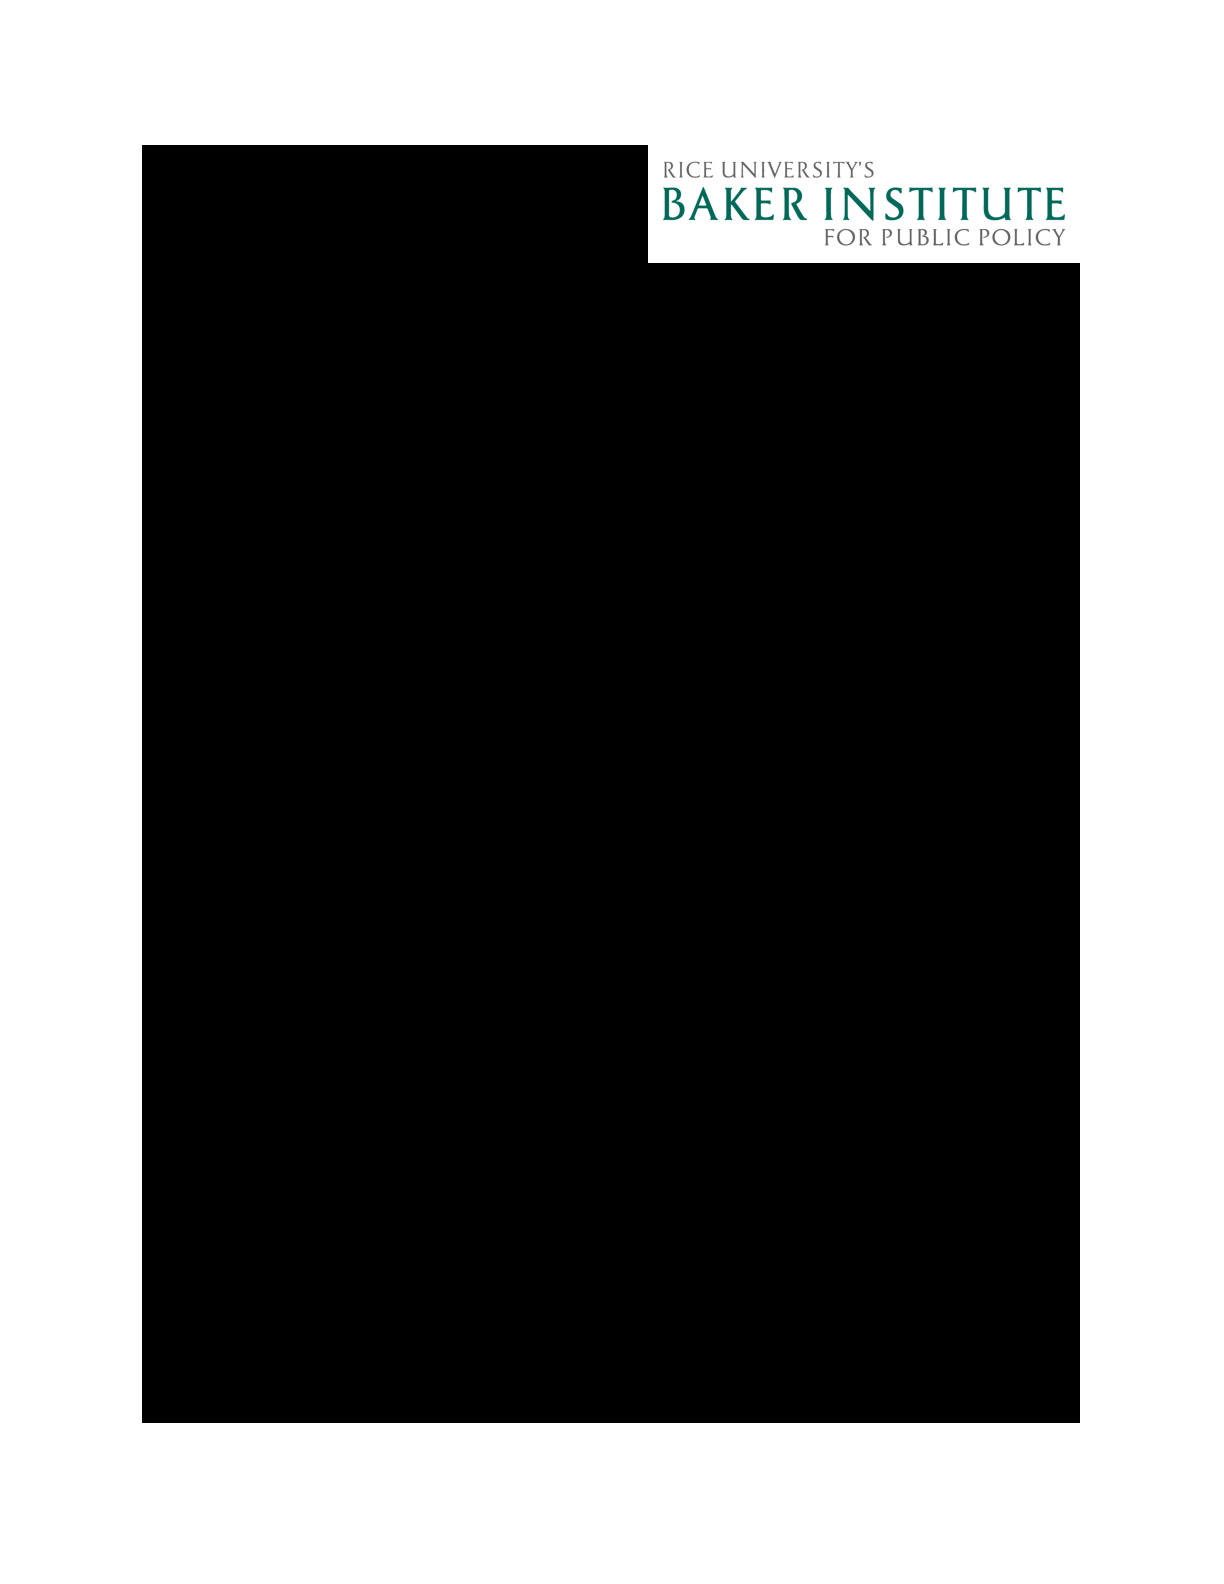 Singh20160425-BakerInstitute.pdf